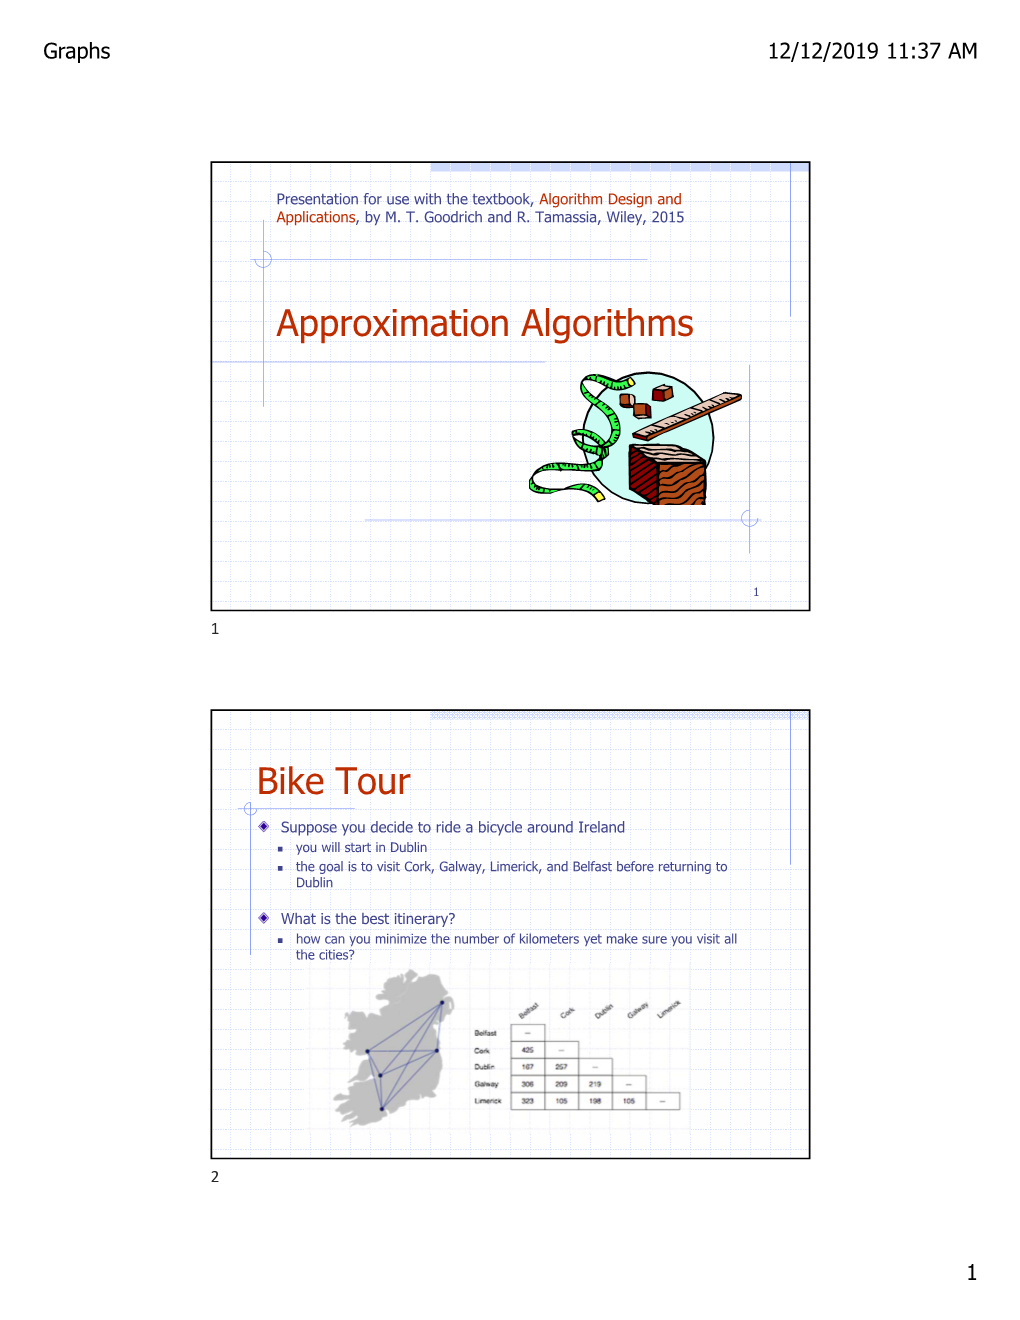 Approximation Algorithms Bike Tour